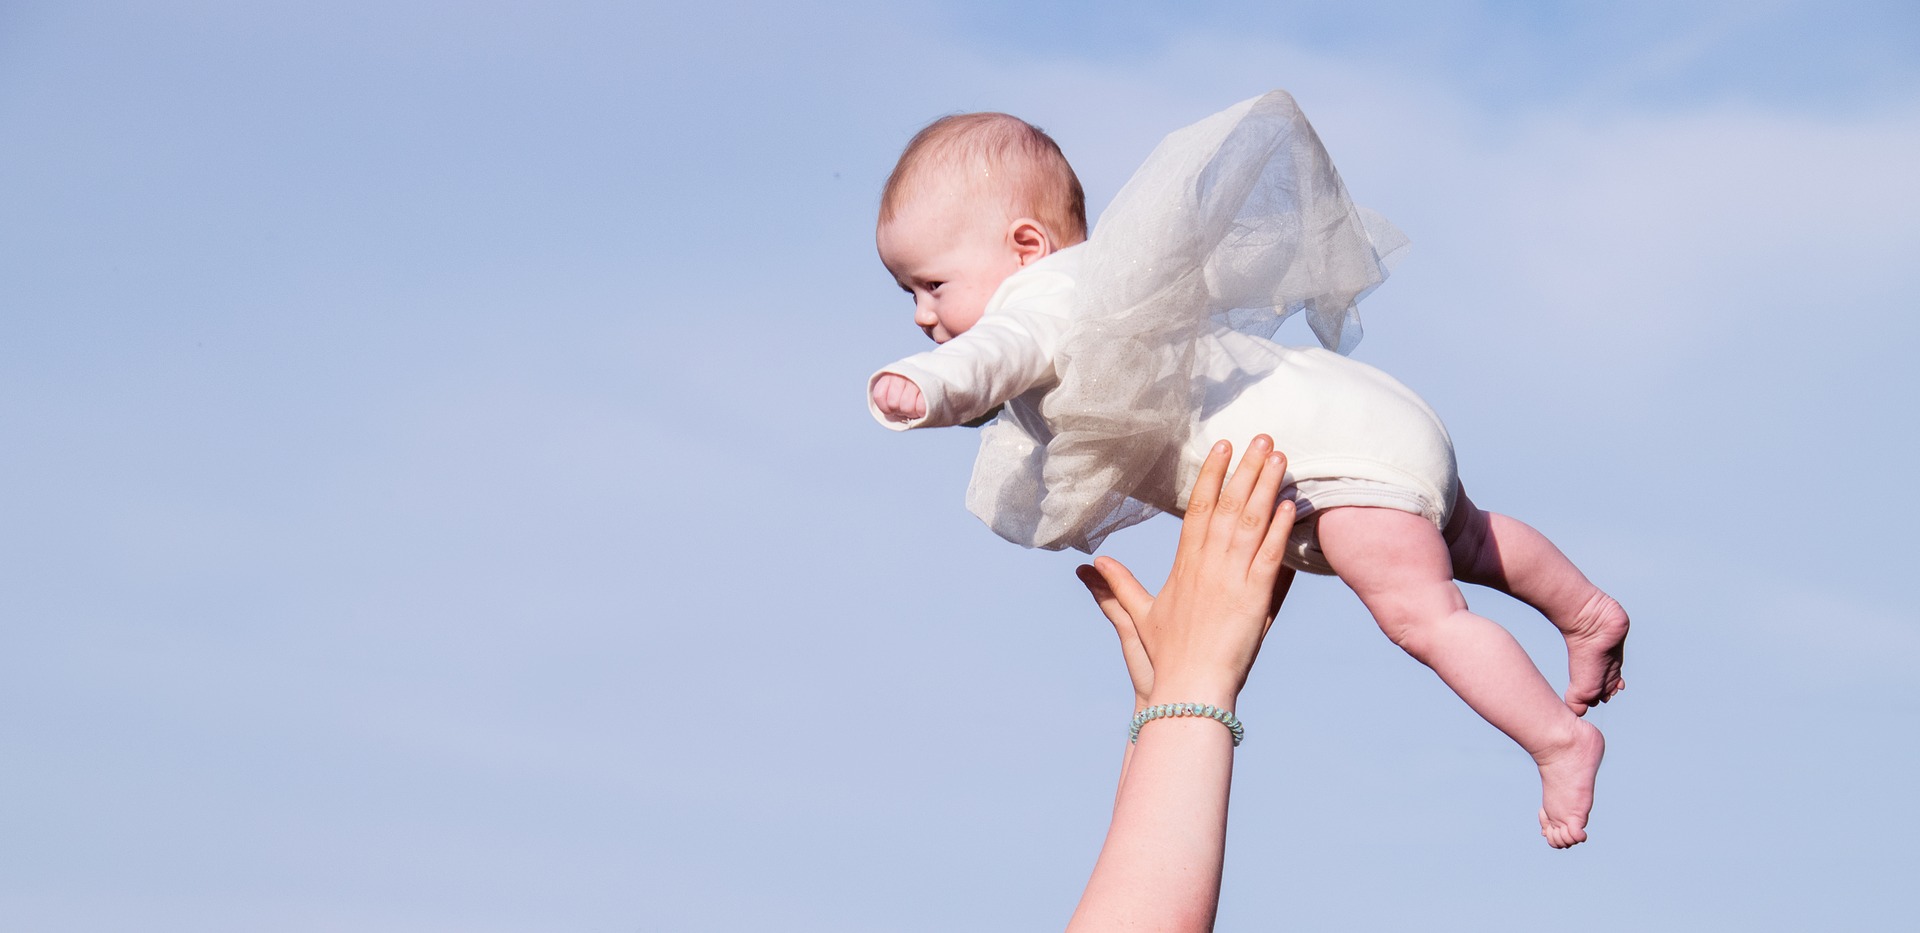 ¿Es prudente lanzar un bebé al aire?